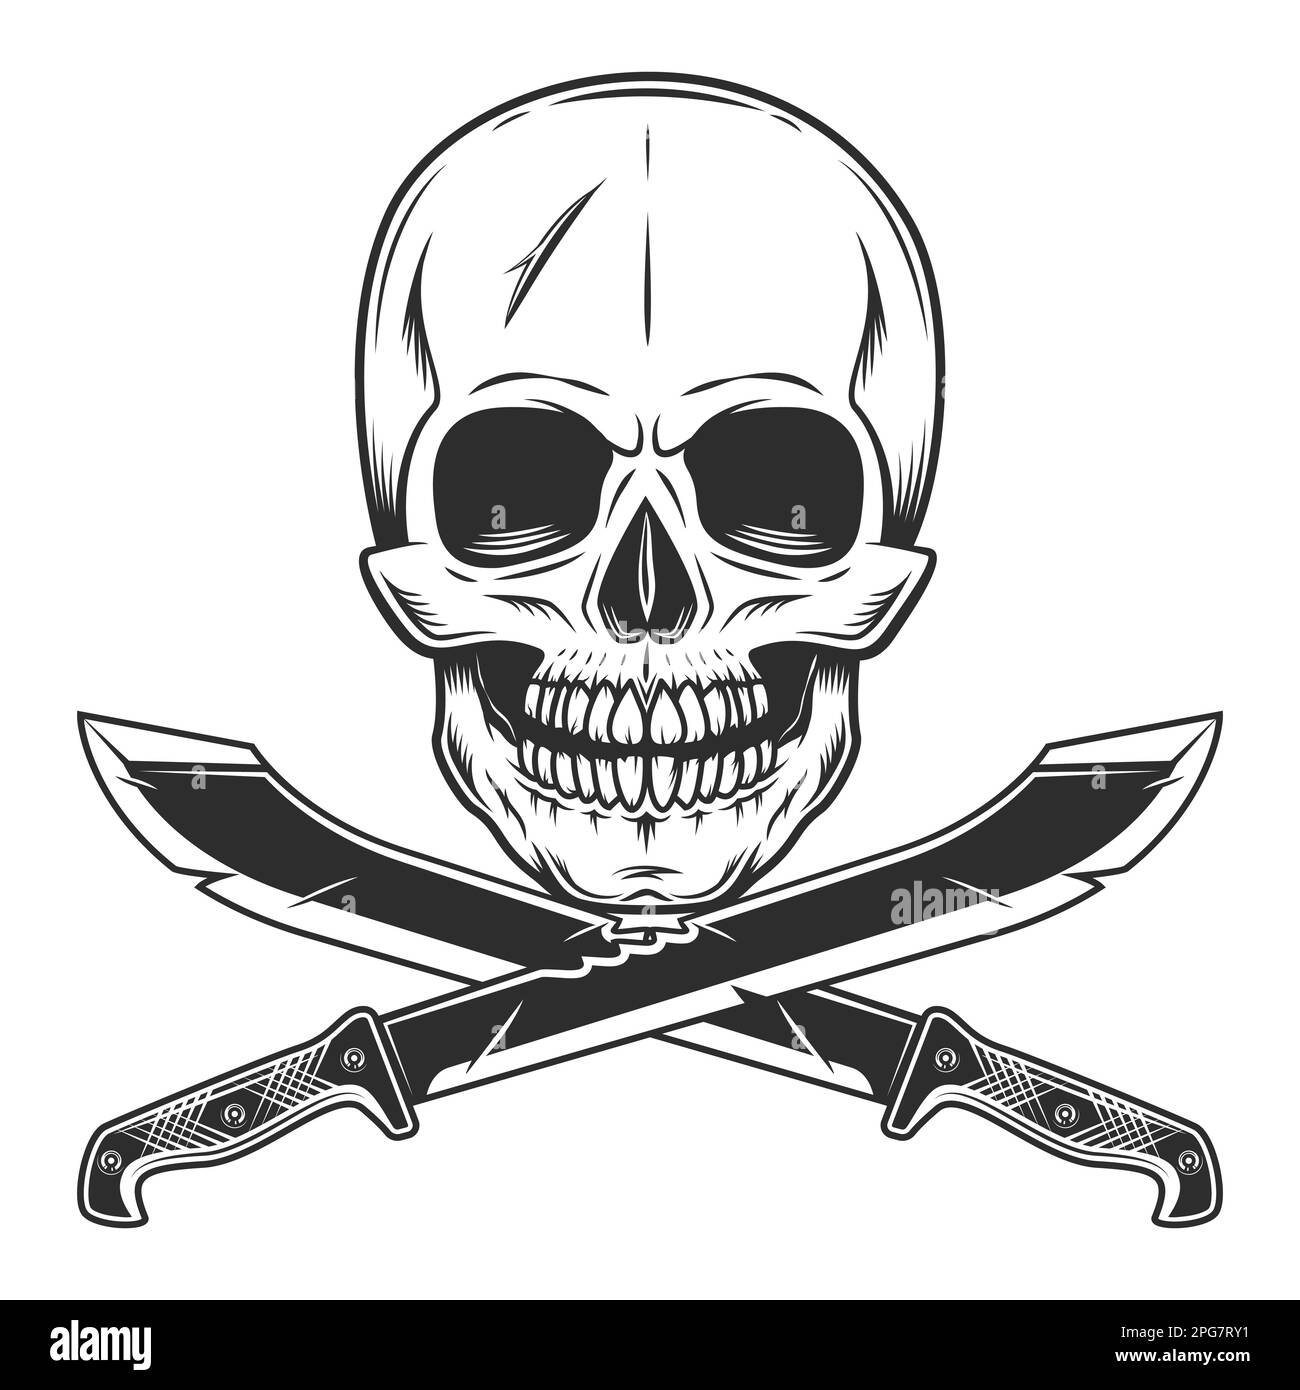 Cráneo con machete cuchillo afilado arma cuerpo a cuerpo del cazador en la selva. Blanco y negro aislado sobre fondo blanco Foto de stock